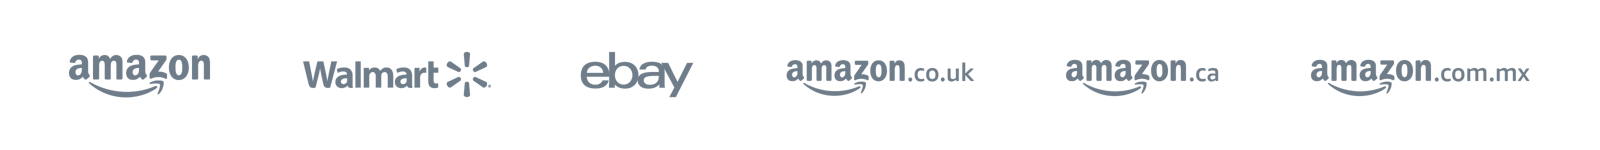 SupplyKick: Amazon and Walmart Marketplace Partner